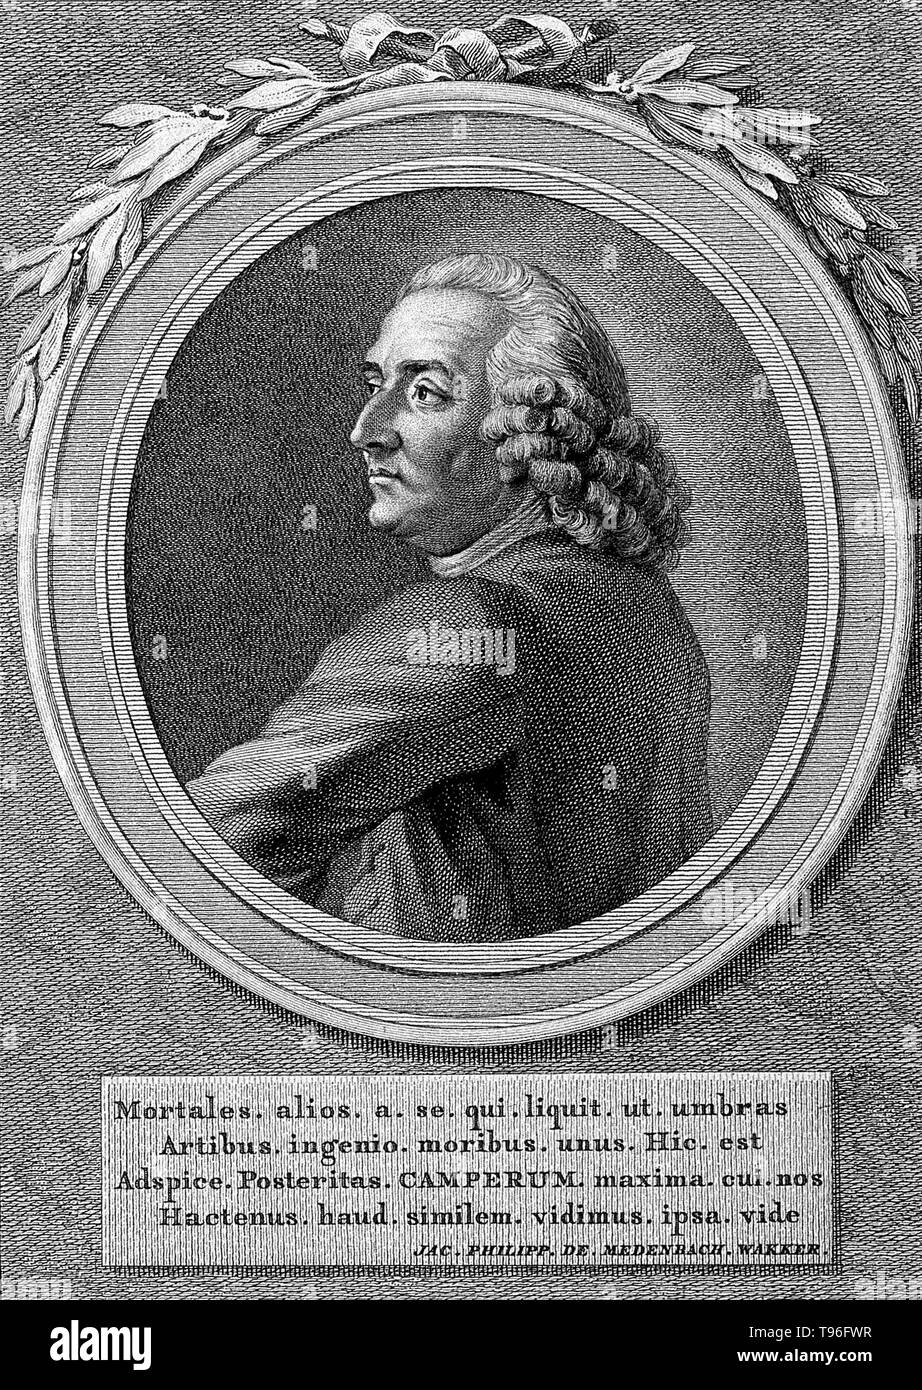 Petrus Camper (Mai 11, 1722 - April 7, 1789) war ein niederländischer Arzt, Anatom, Physiologe, Hebamme, Zoologe, Anthropologe, Paläontologe und Naturforscher. Er studierte die Orang-utan, der Nashörner, und der Schädel eines Mosasaur, die er glaubte, ein Wal war. Zeile Gravur von reinier Vinkeles und C. Bogerts, 1792, nach Jacobus kauft. Stockfoto